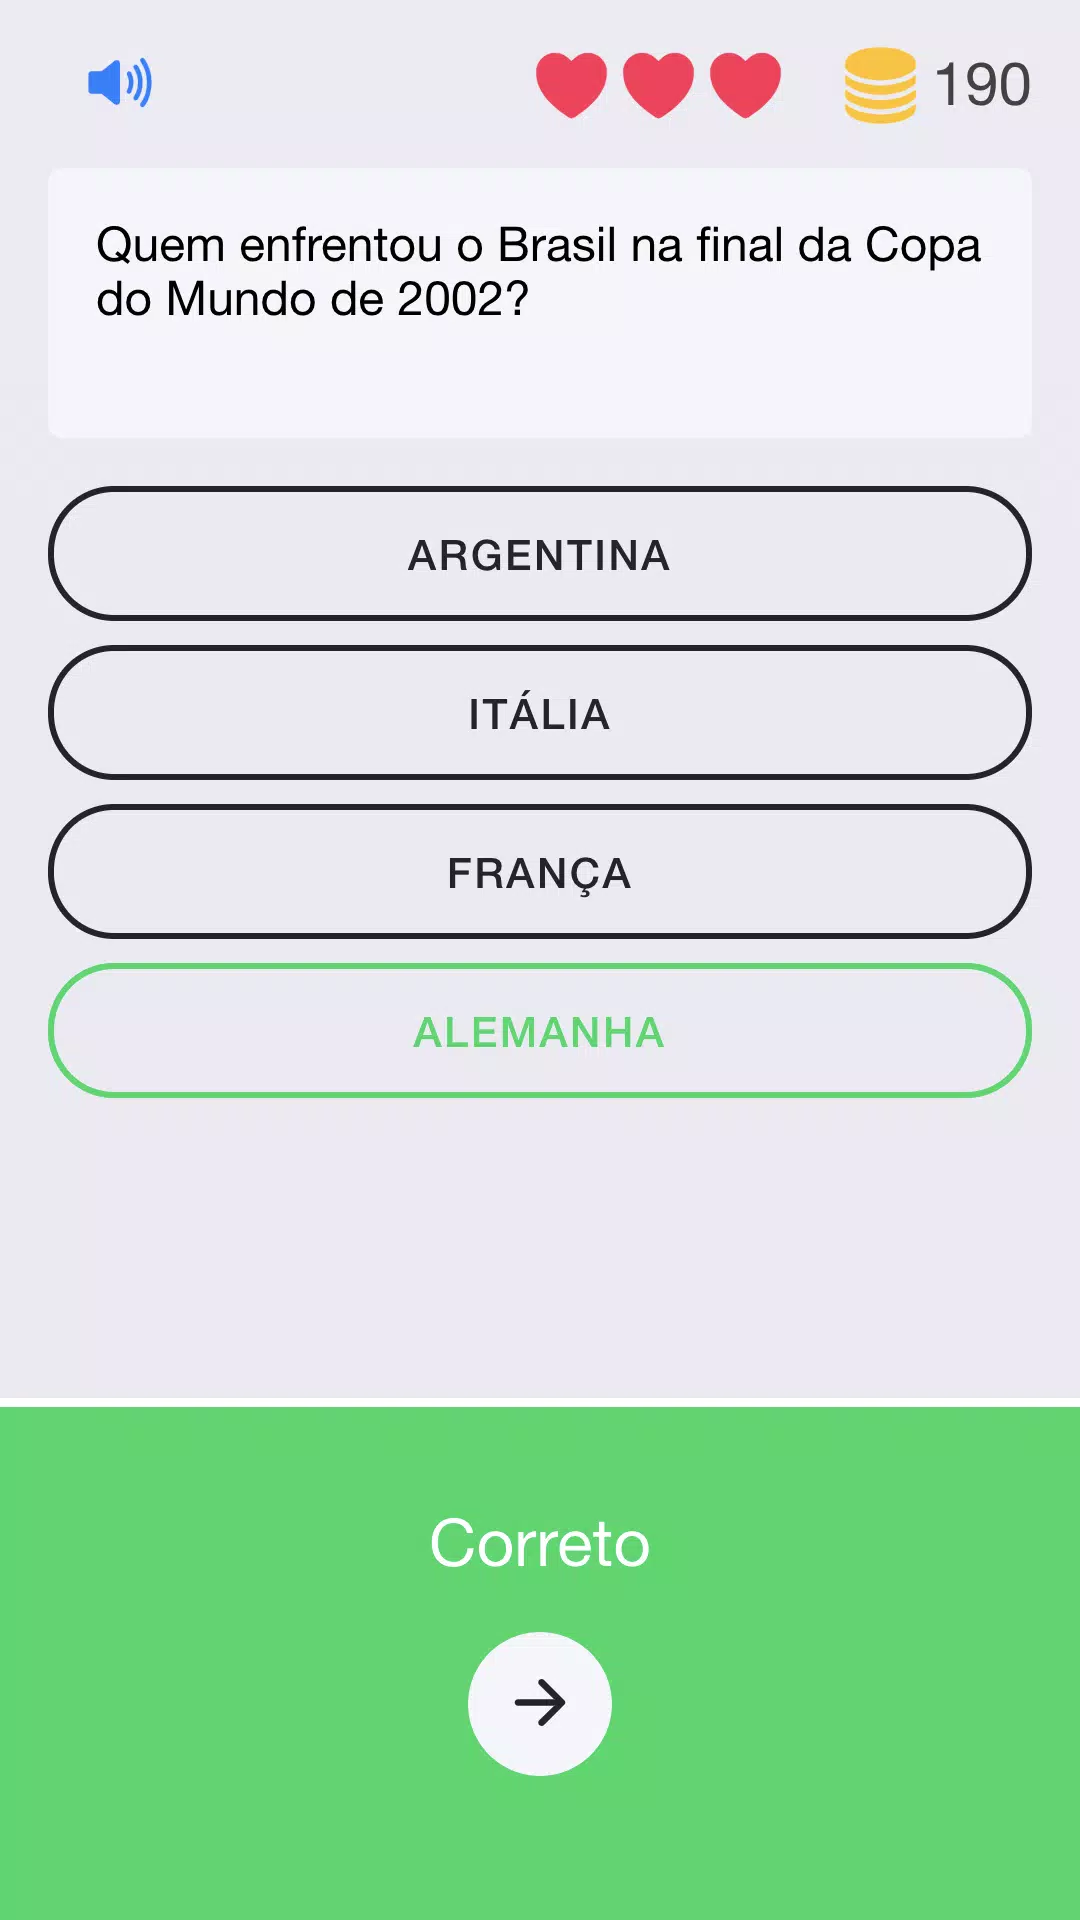 Download do APK de Futebol & Time Quiz para Android